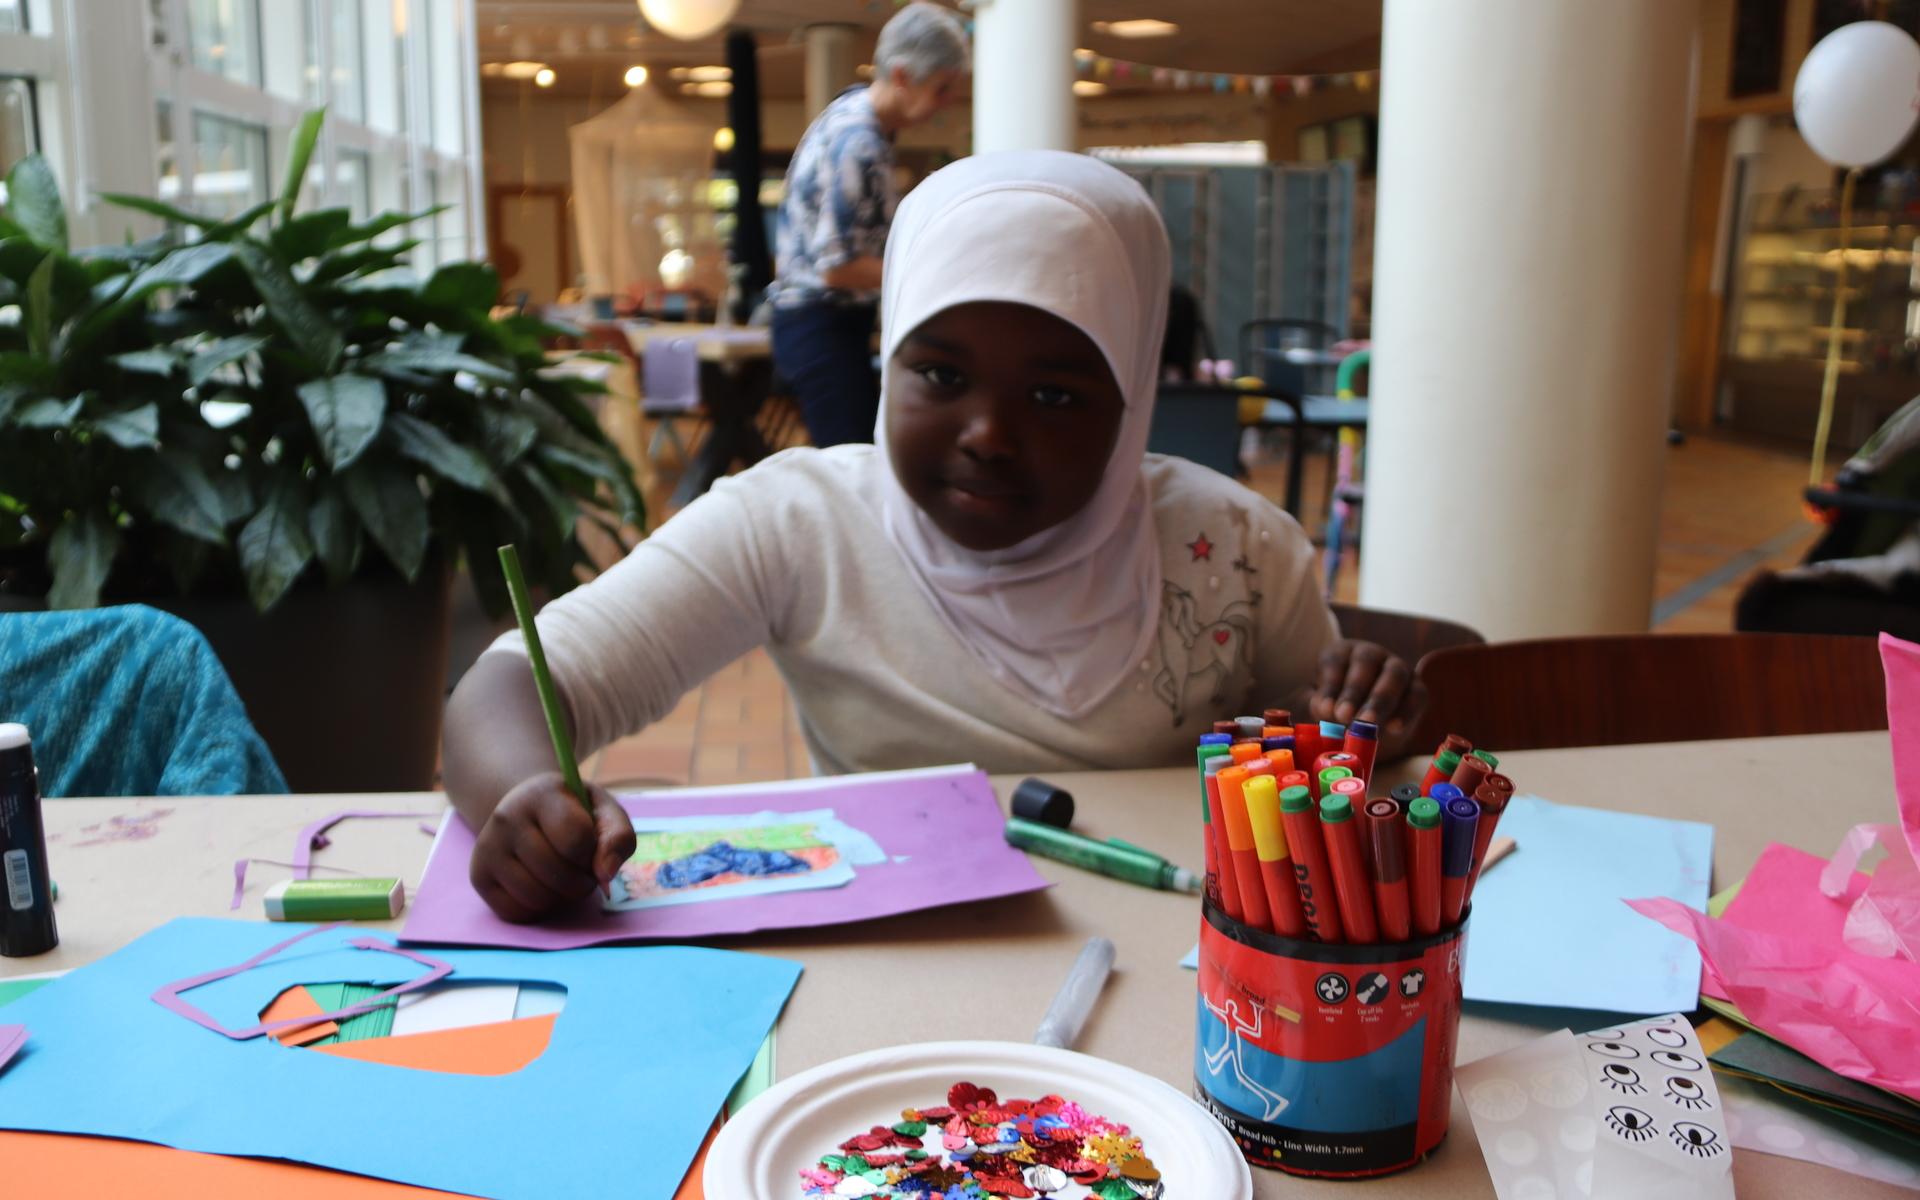 Salma Omar, åtta år, koncentrerade sig på att måla, rita och göra collagemed glitterpaljetter.